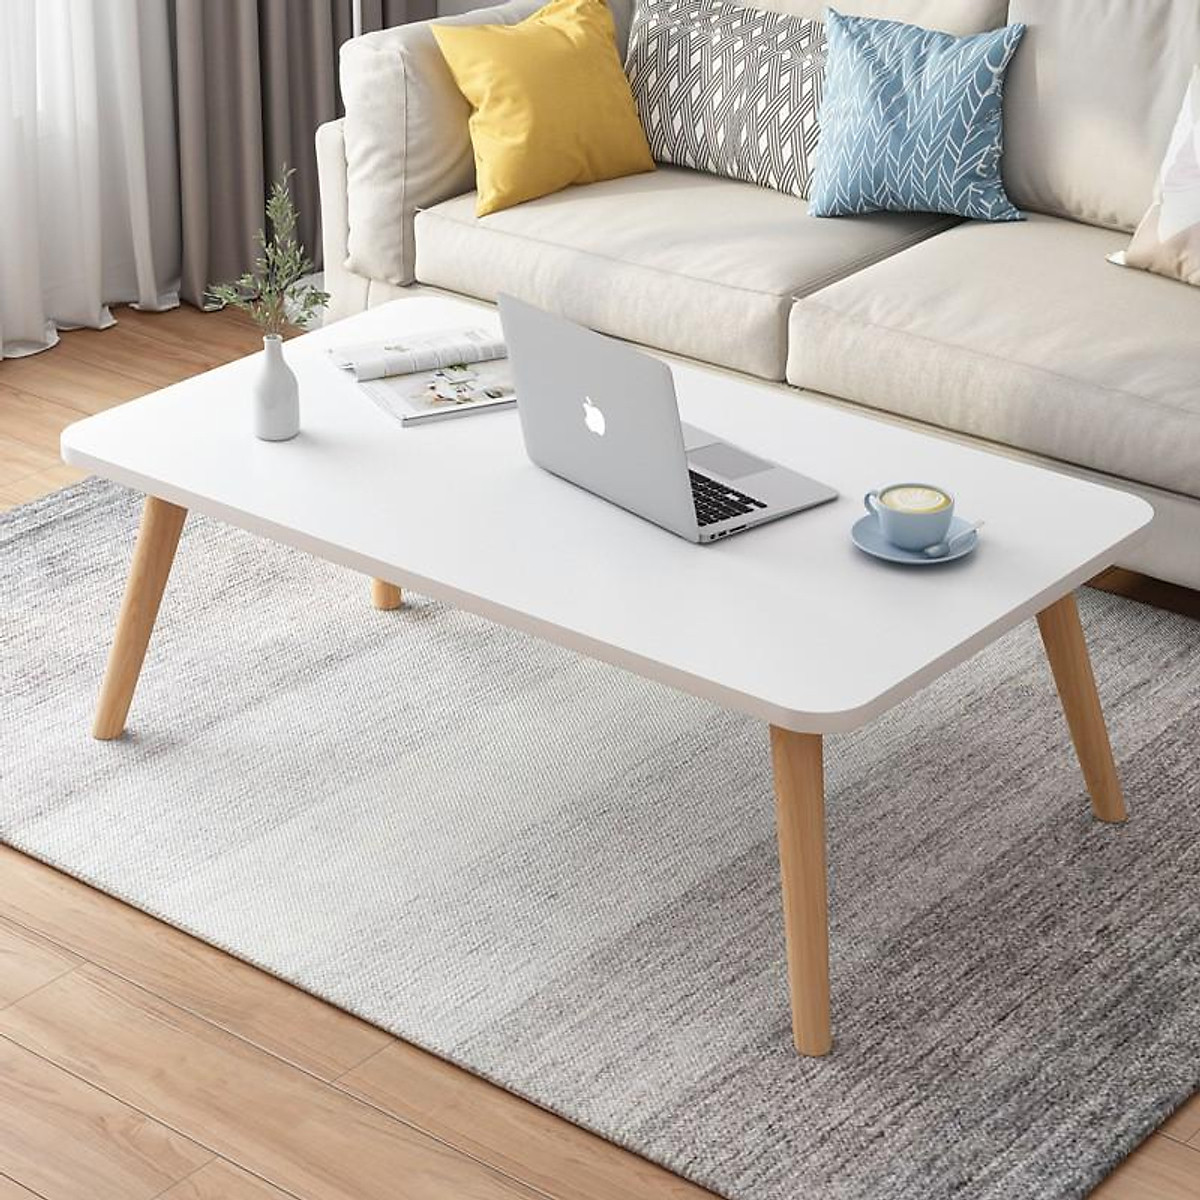 Mua bàn trà sofa phòng khách hình chữ nhật để trang trí cho ngôi nhà của bạn trở nên đẹp hơn. Sản phẩm có kiểu dáng đơn giản, tinh tế cùng với chất liệu bền đẹp. Bàn trà phòng khách hình chữ nhật giúp tối ưu hóa không gian phòng khách của bạn, mang đến không gian sống hiện đại, kết hợp giữa tiện ích và thẩm mỹ. Hãy thưởng thức hình ảnh bàn trà sofa phòng khách hình chữ nhật nào.